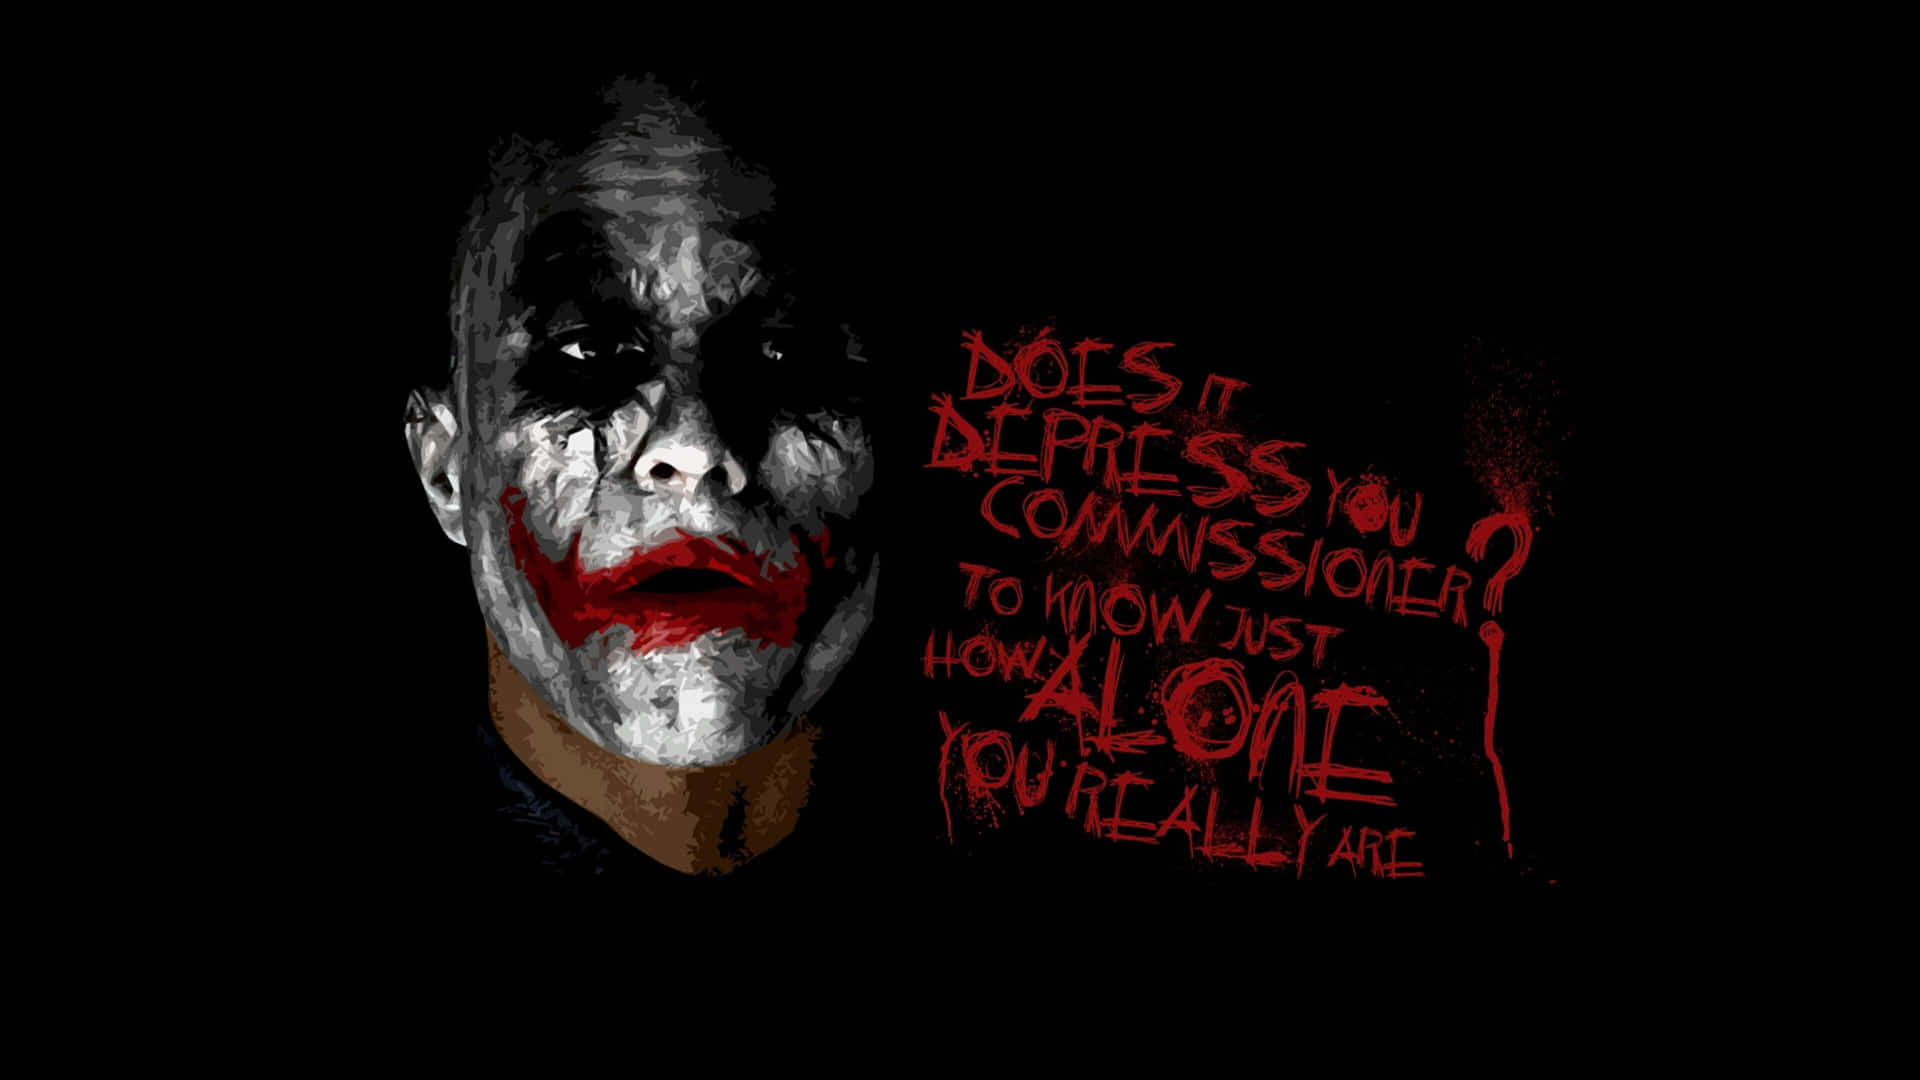 Heathledger Som Joker I The Dark Knight, I 4k Ultra Hd. Wallpaper